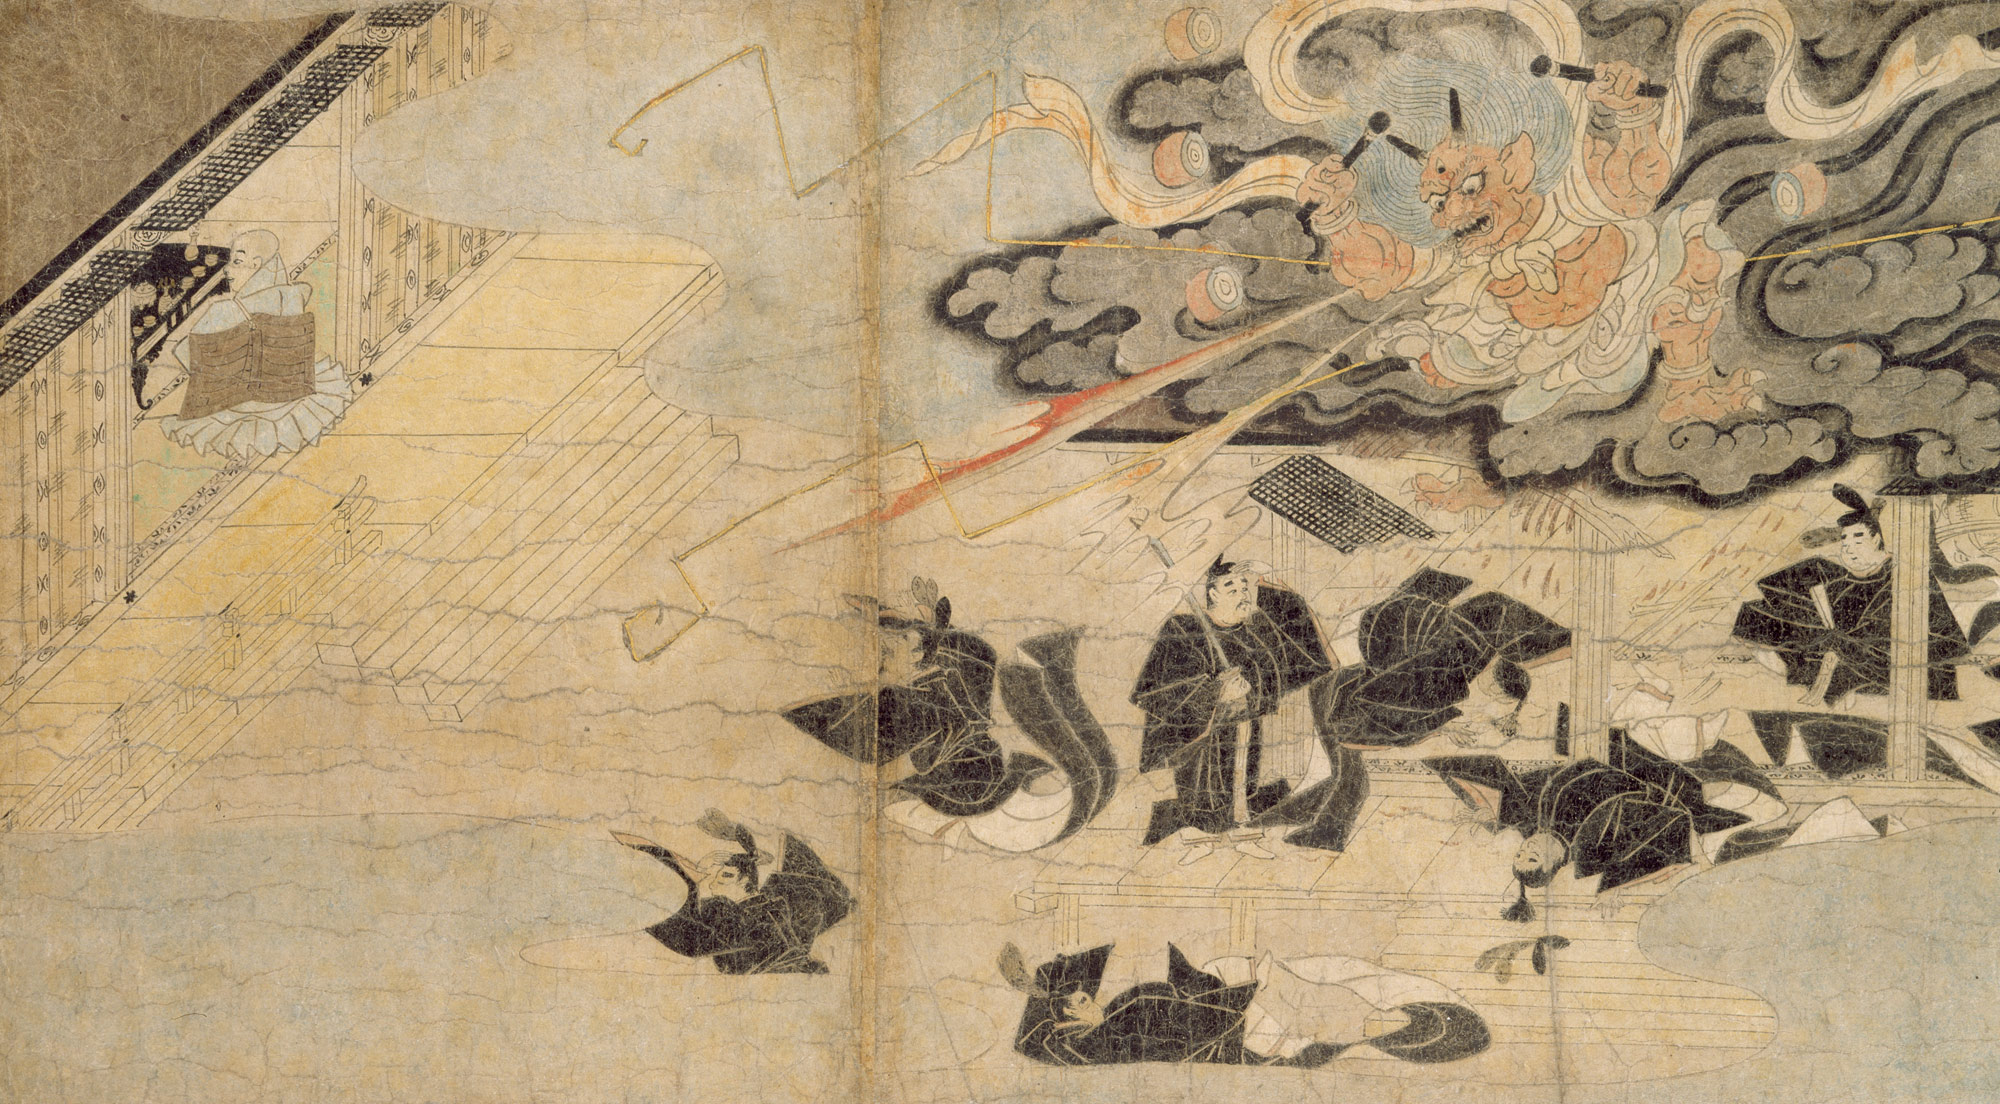 Illustrated Legends of the Kitano Tenjin Shrine (Kitano Tenjin engi emaki)